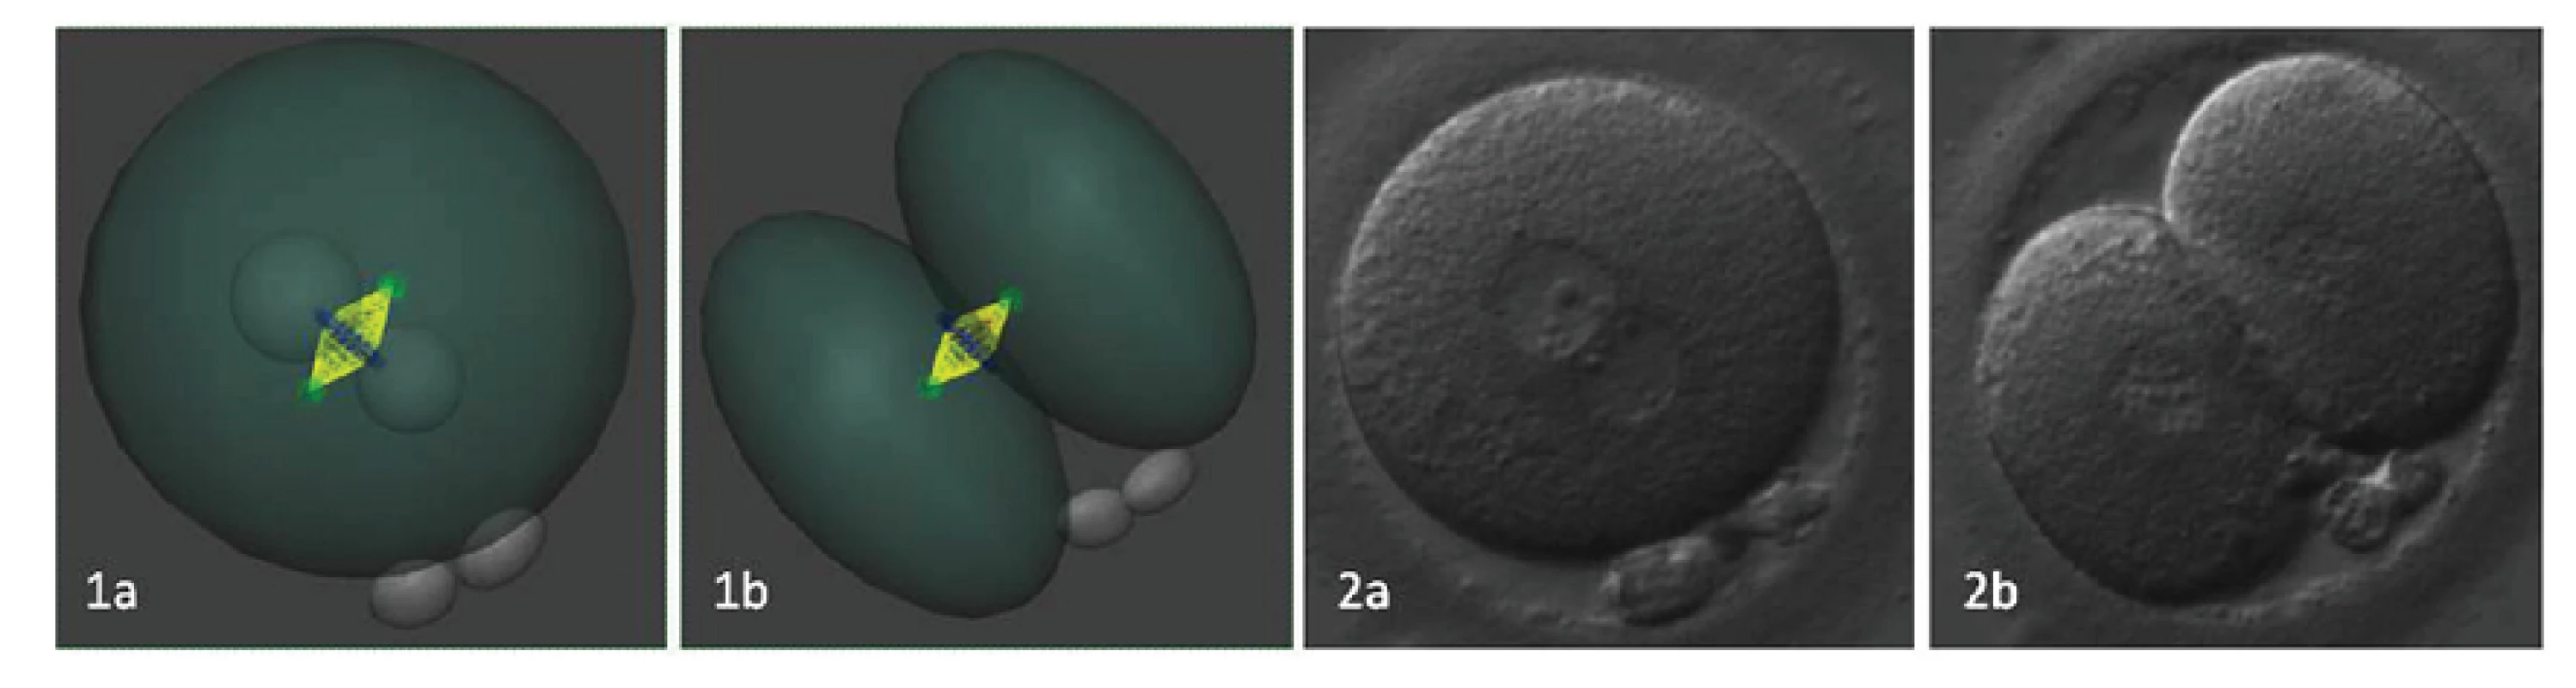 Rovnomernosť distribúcie polarizovanej ooplazmy je ovplyvnená rovinou delenia, ktorá je daná polohou prvojadier pred nástupom syngamie.
1a/b. 3D rekonštrukcia polohy deliaceho vretienka v závislosti od polohy prvojadier. 2a/b. embryo v reálnom zobrazení pred a po ukončení prvého bunkového cyklu. Autor obrázkov a 3D modelov D. Hlinka